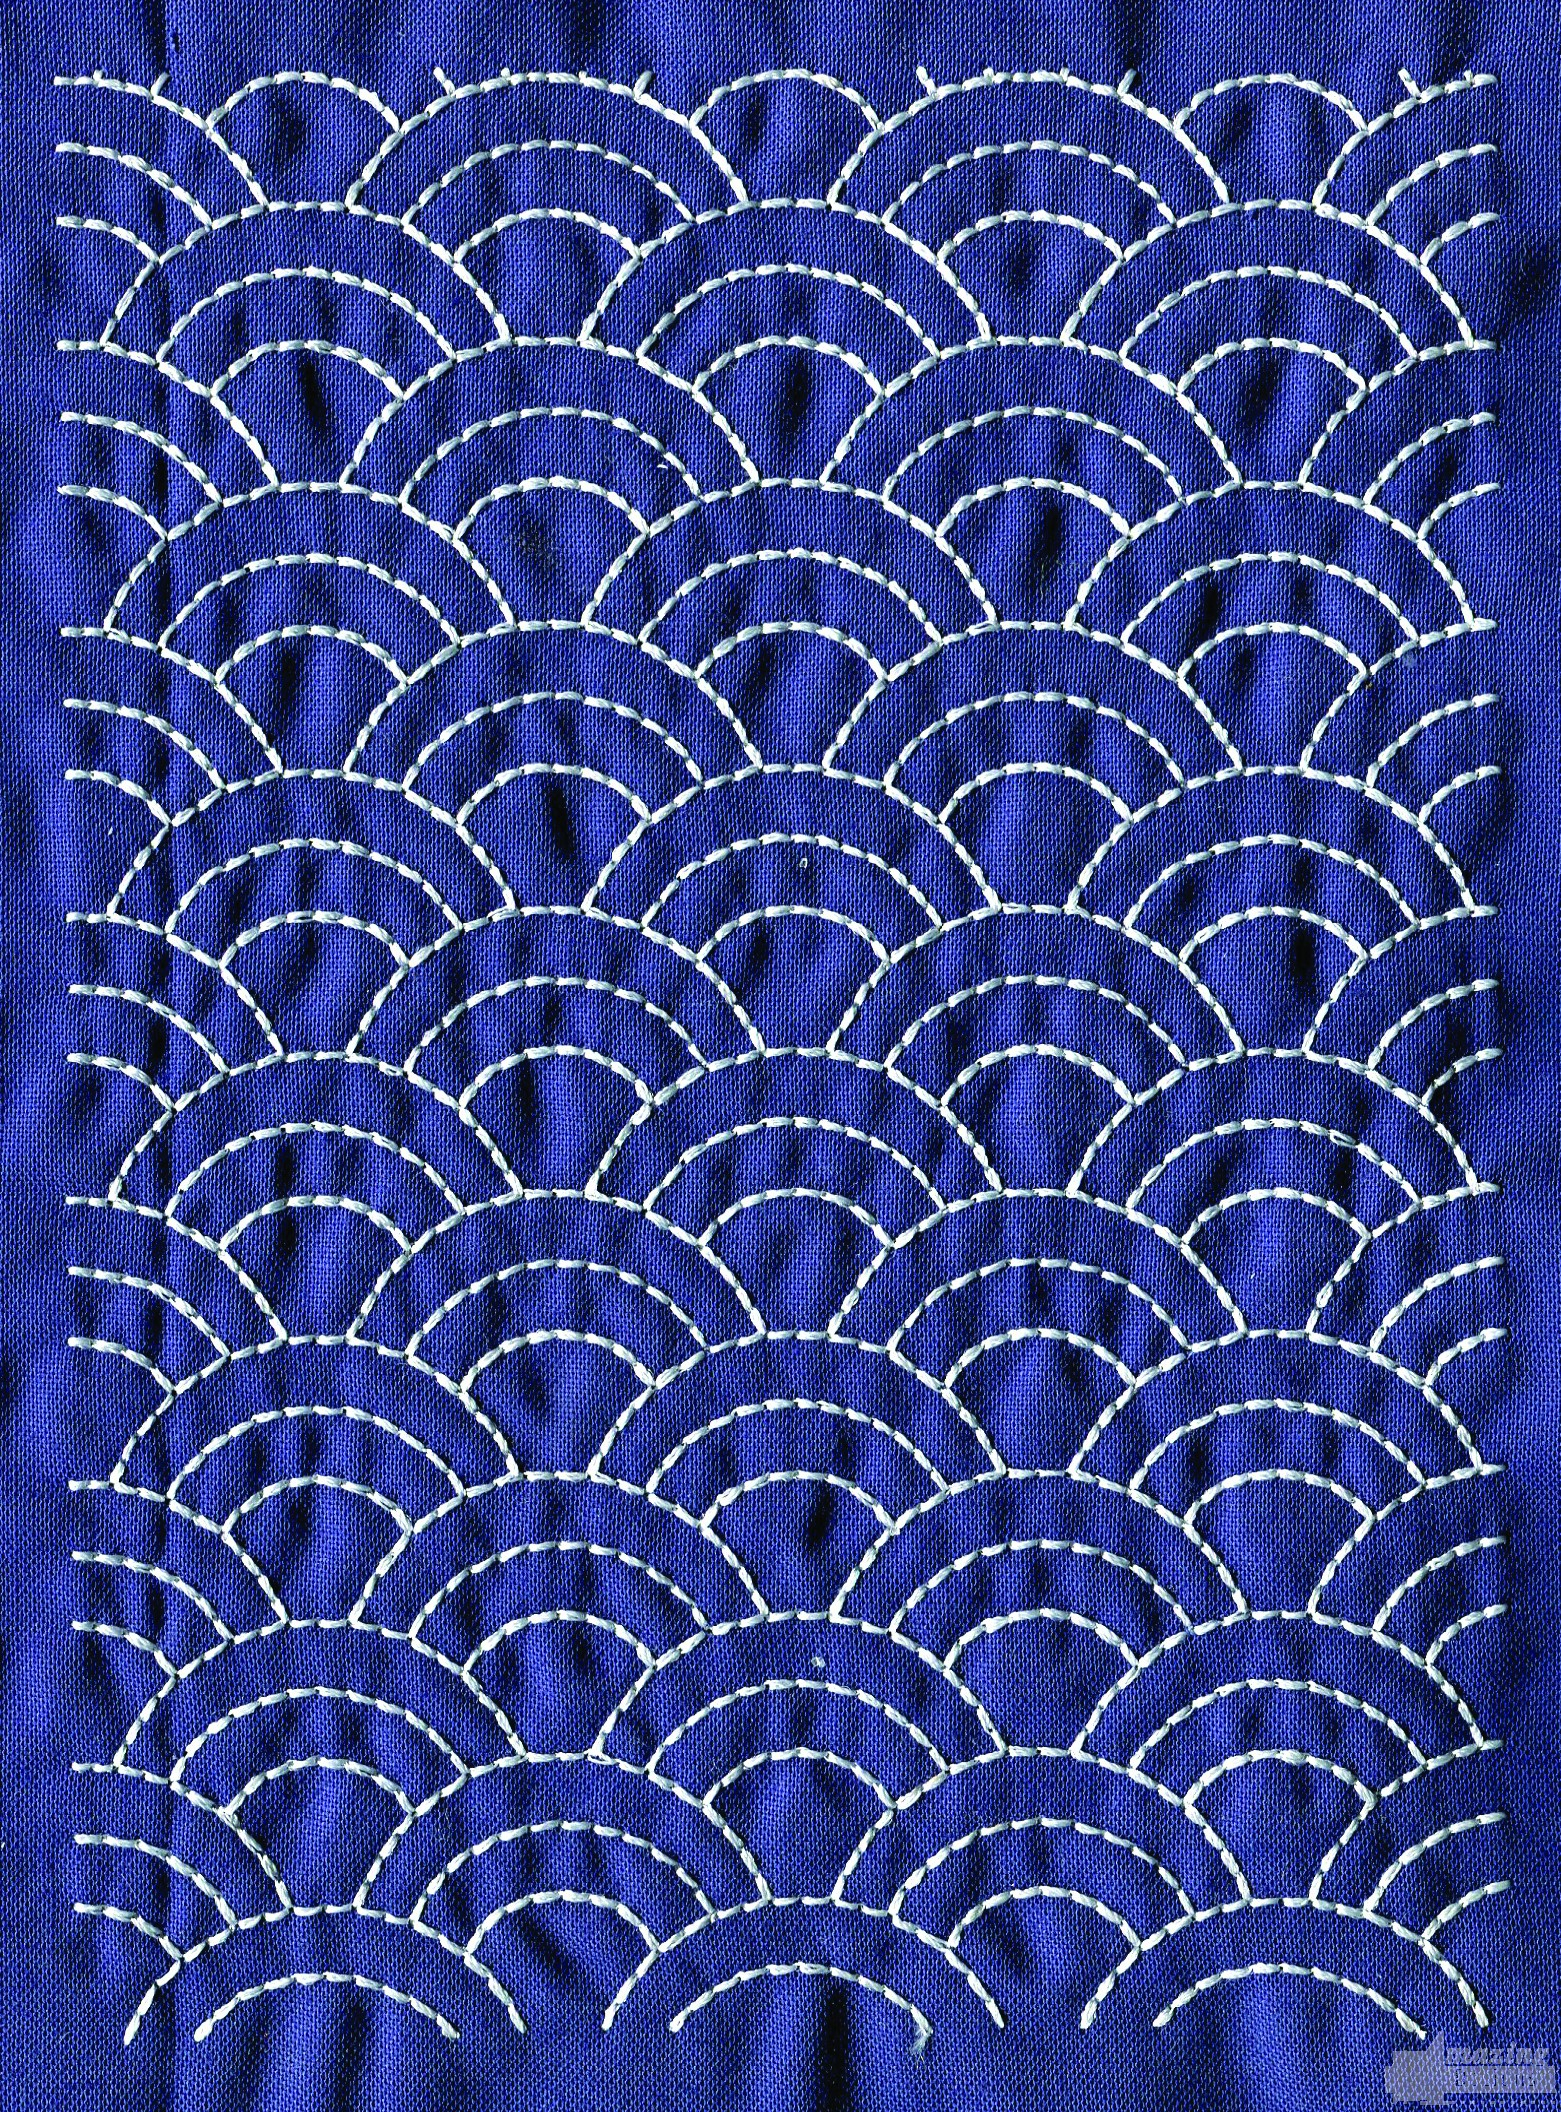 Sashiko Embroidery Patterns Free Free Sashiko Patterns Free Patterns Small Print Quilting Fabric